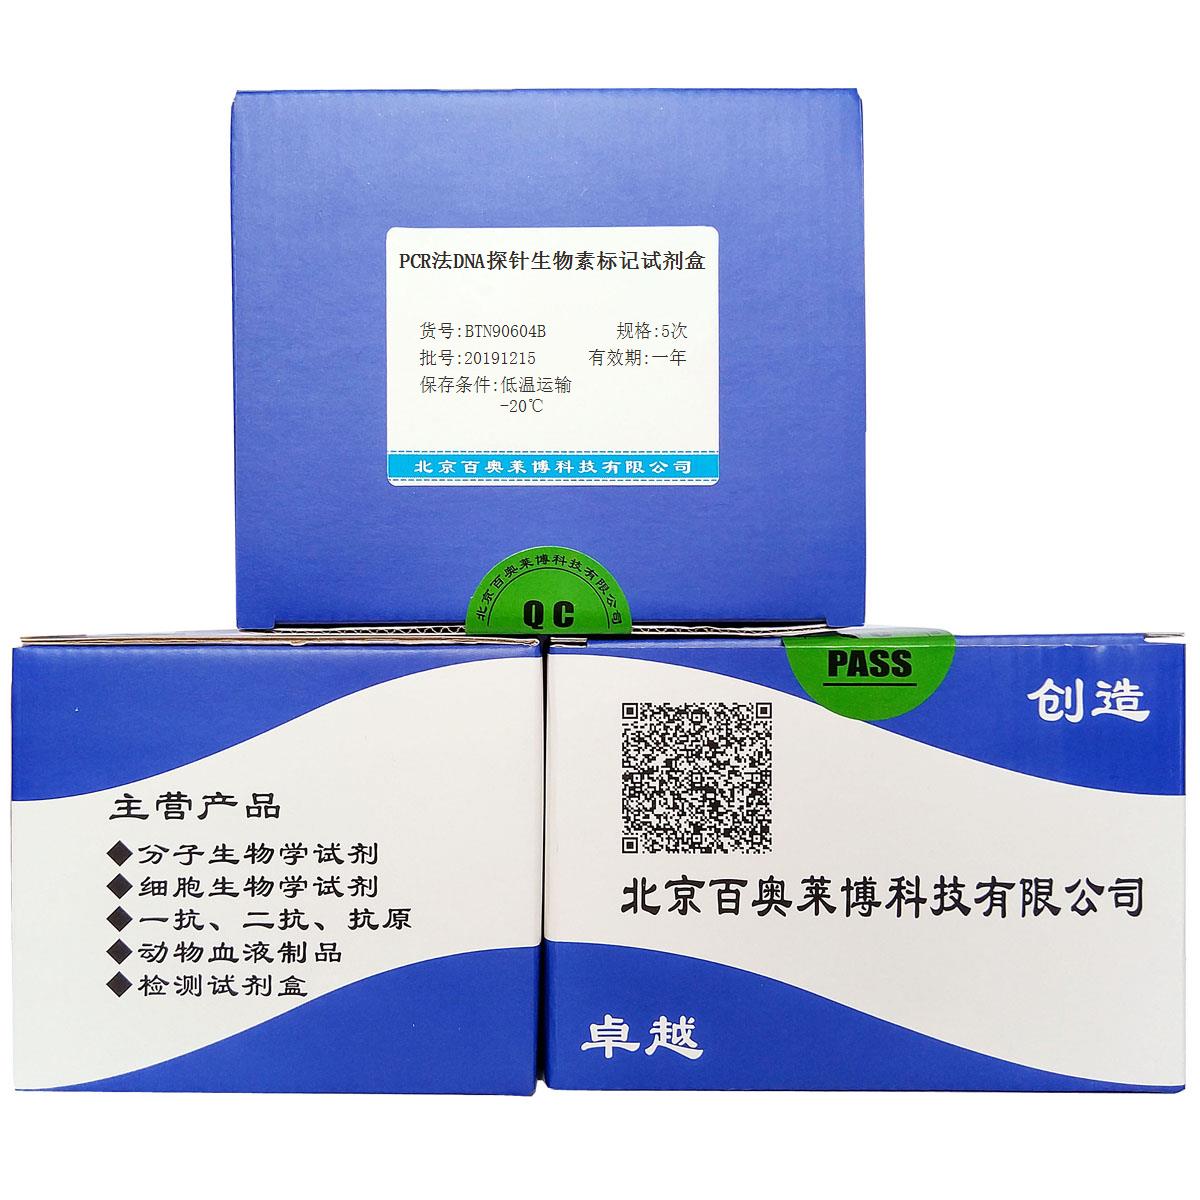 PCR法DNA探针生物素标记试剂盒优惠促销